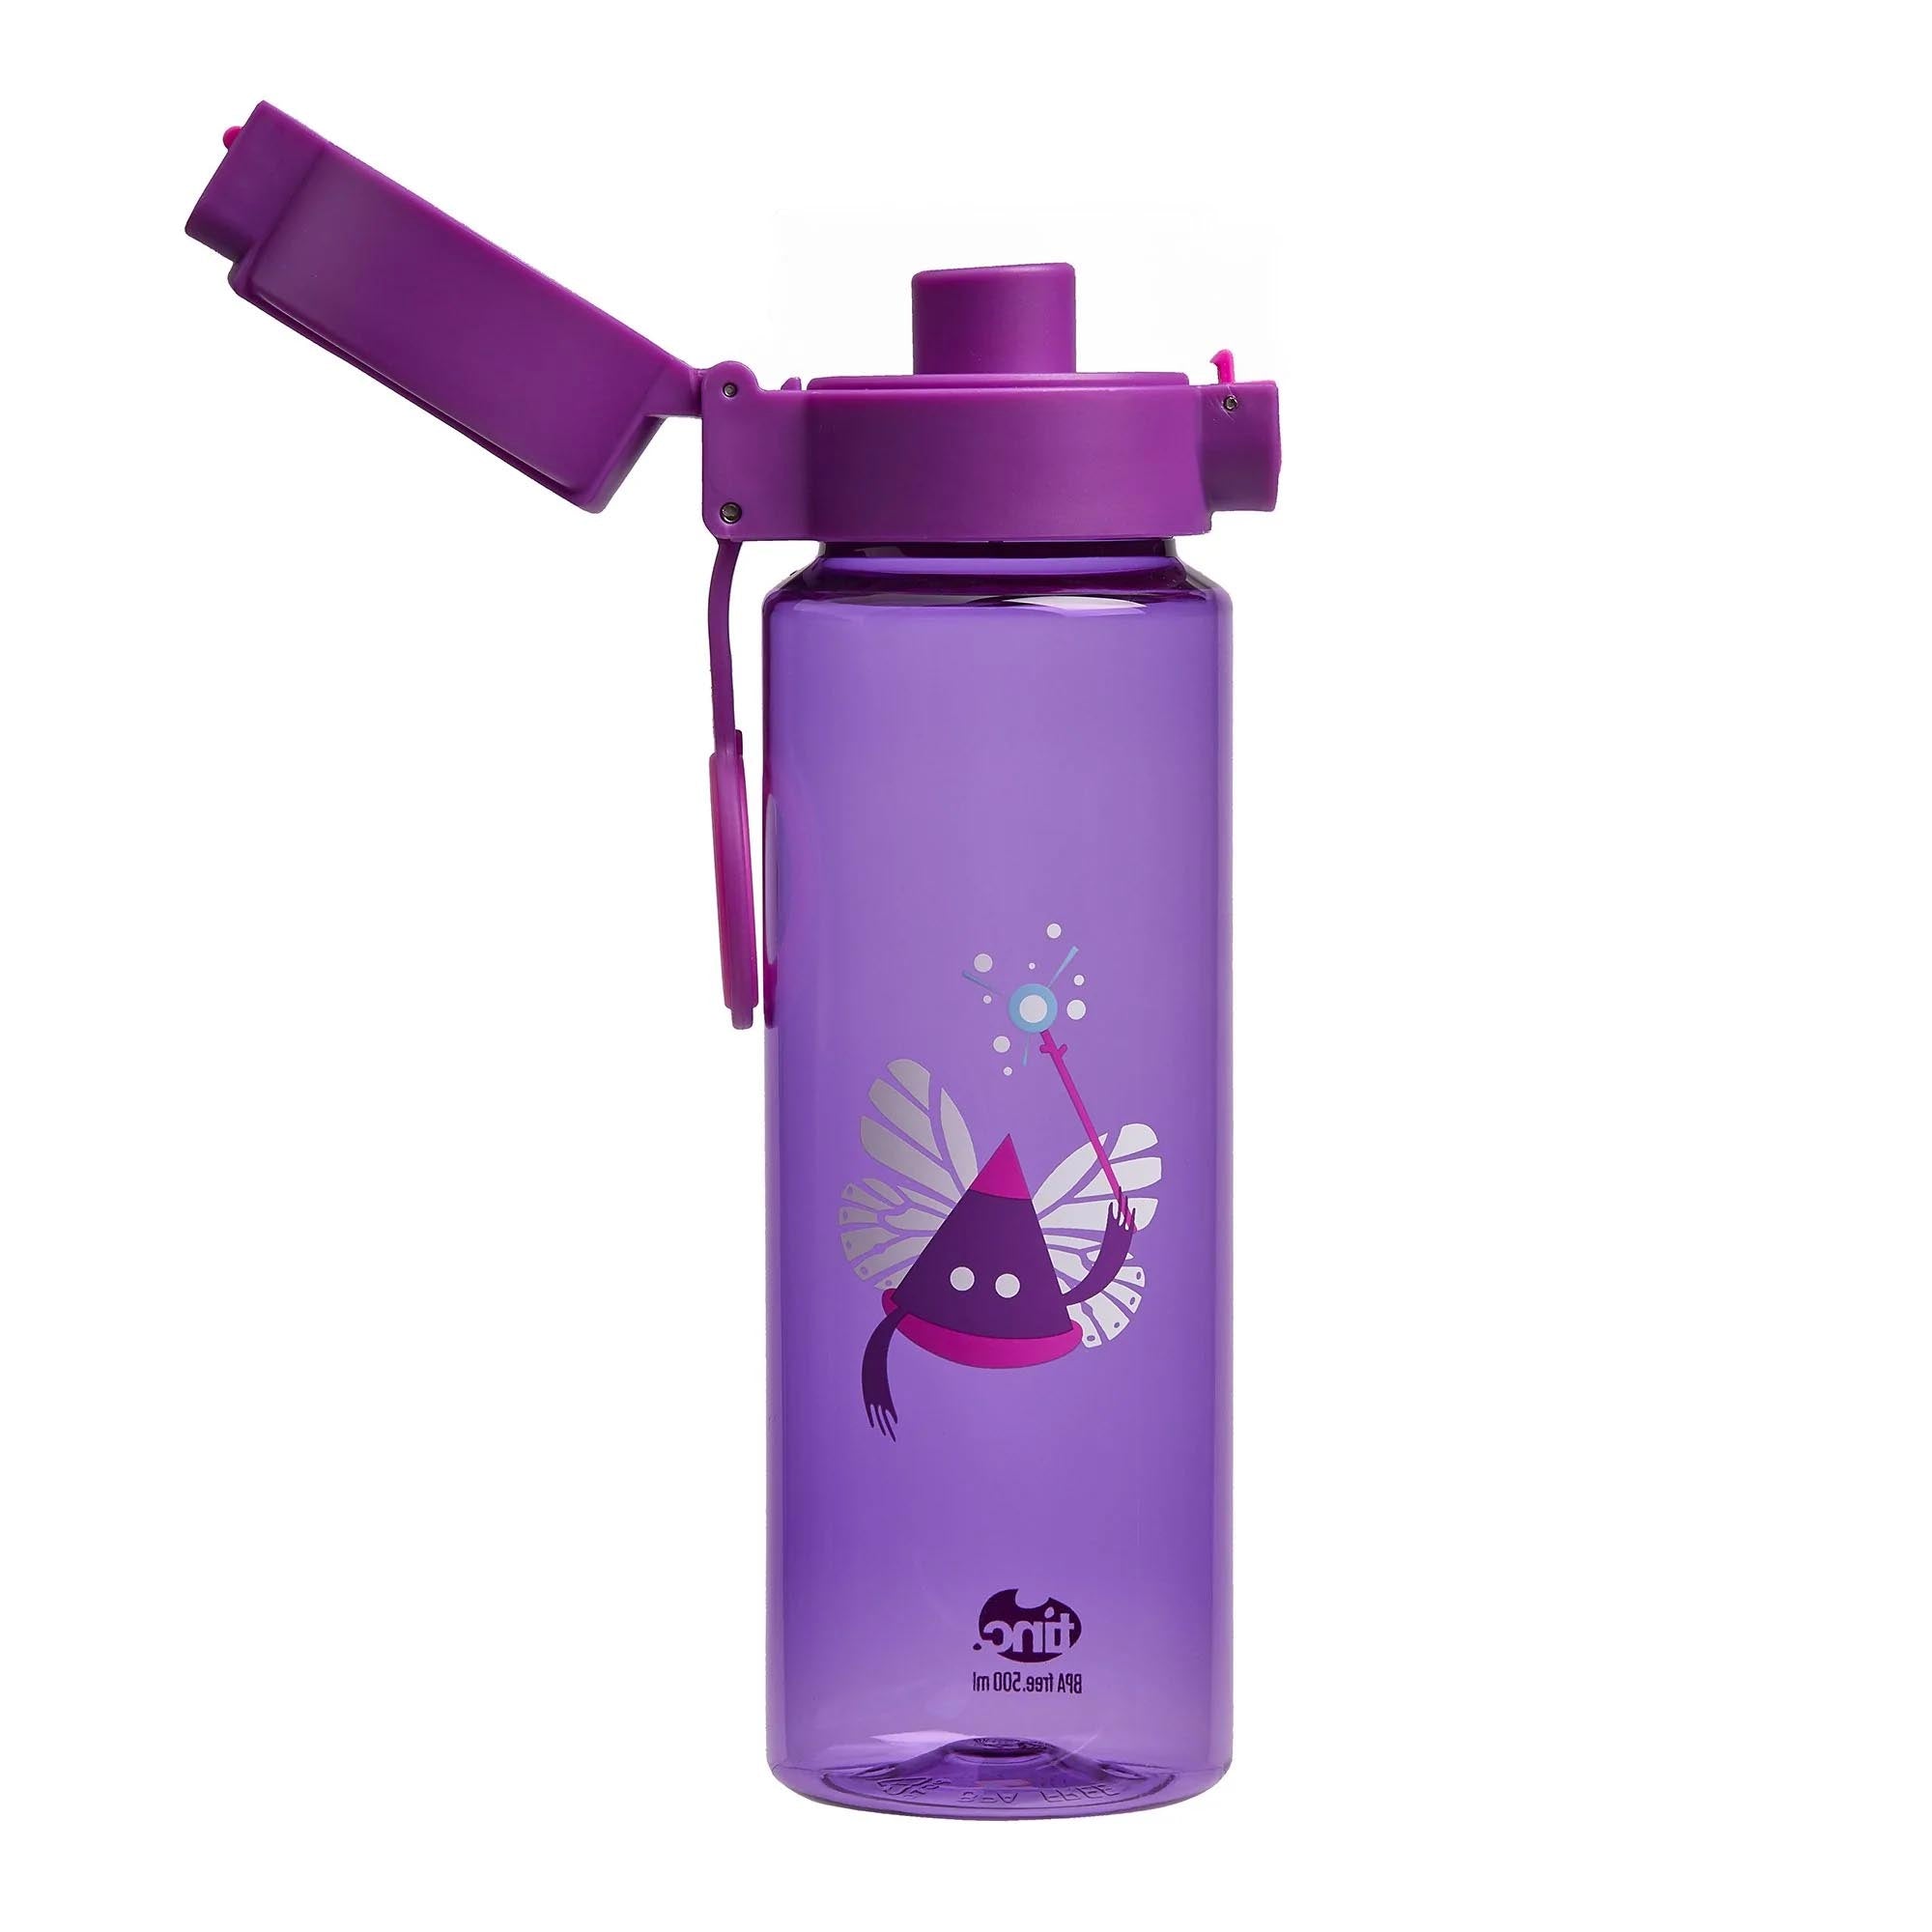 Leak Proof Purple Lockable Lid Drink Bottle